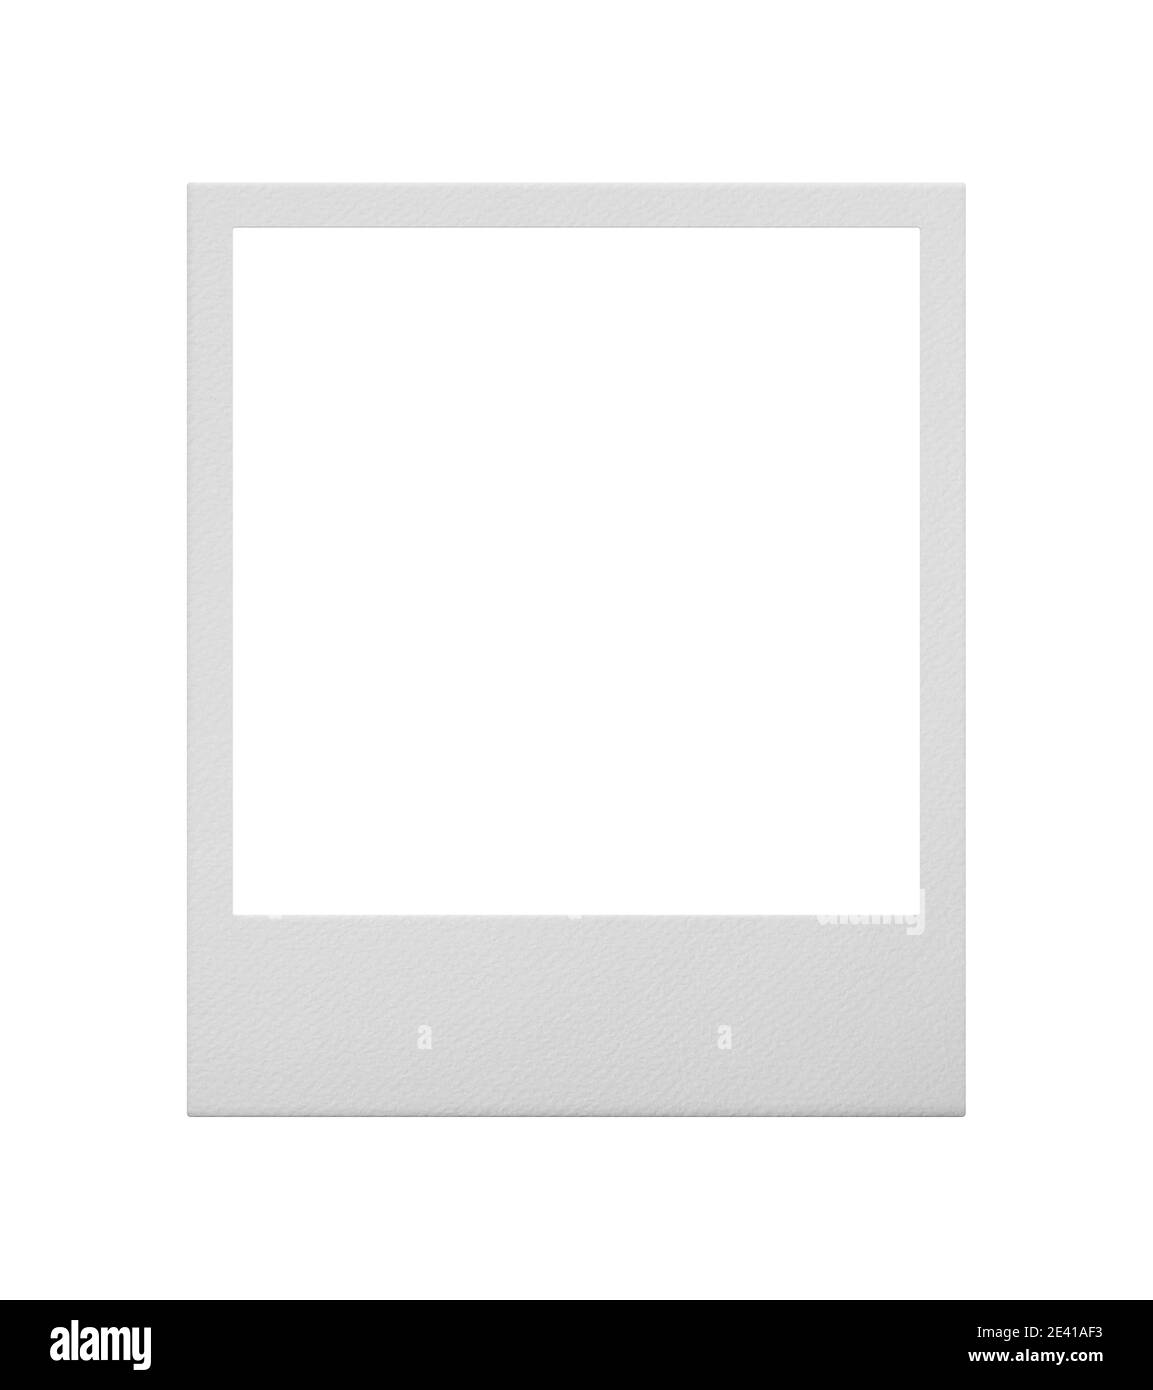 Cadre photo polaroid Banque d'images noir et blanc - Alamy